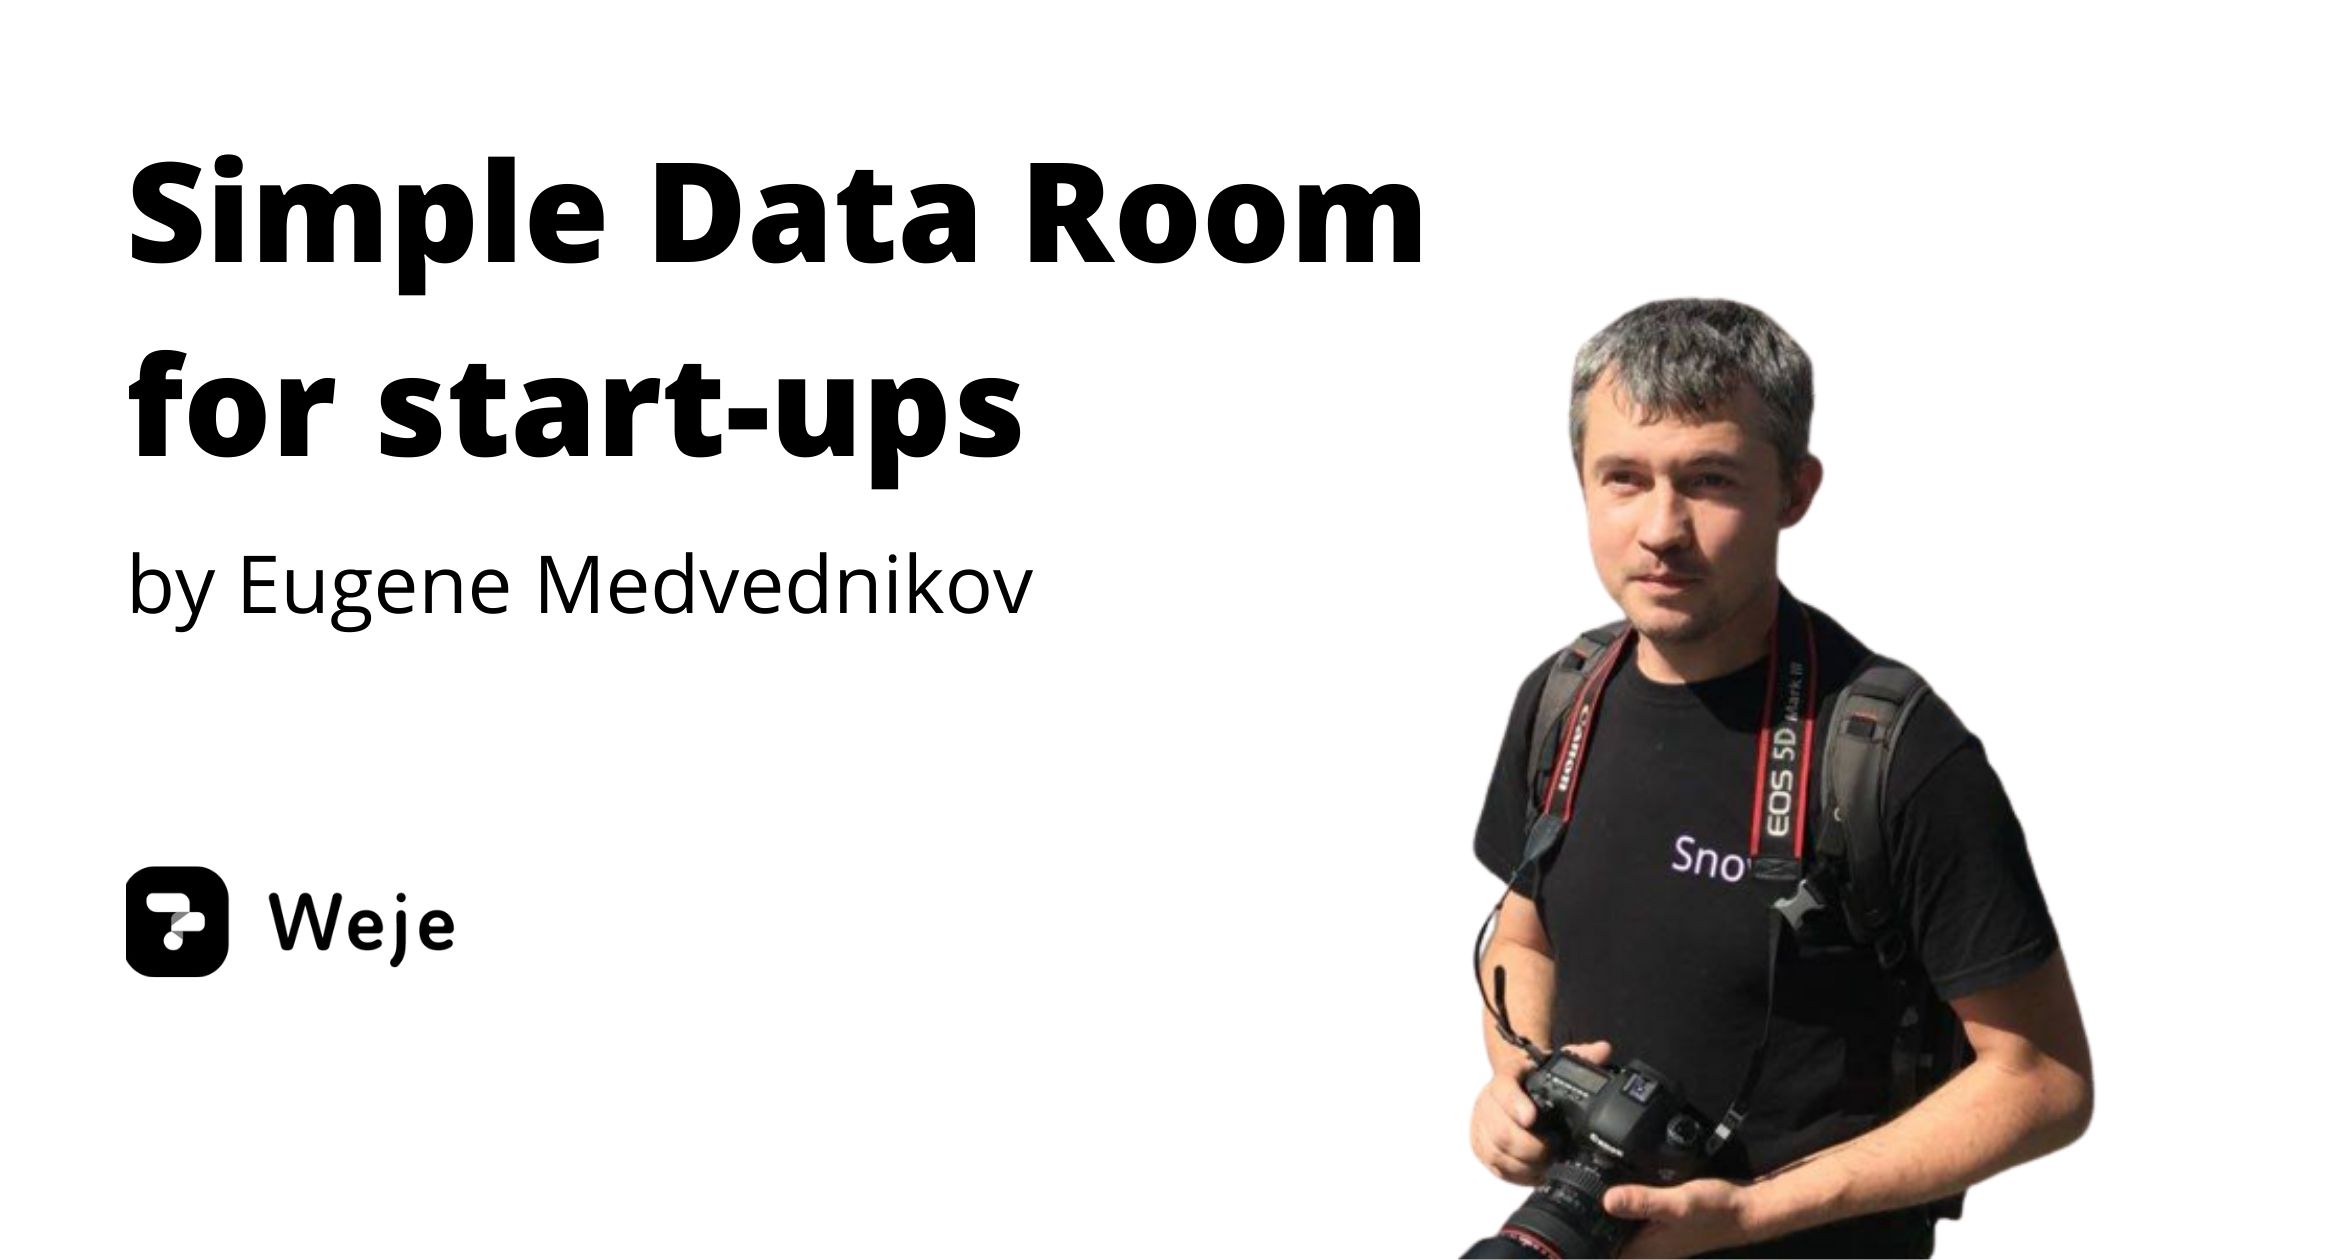 Simple Data Room for start-ups